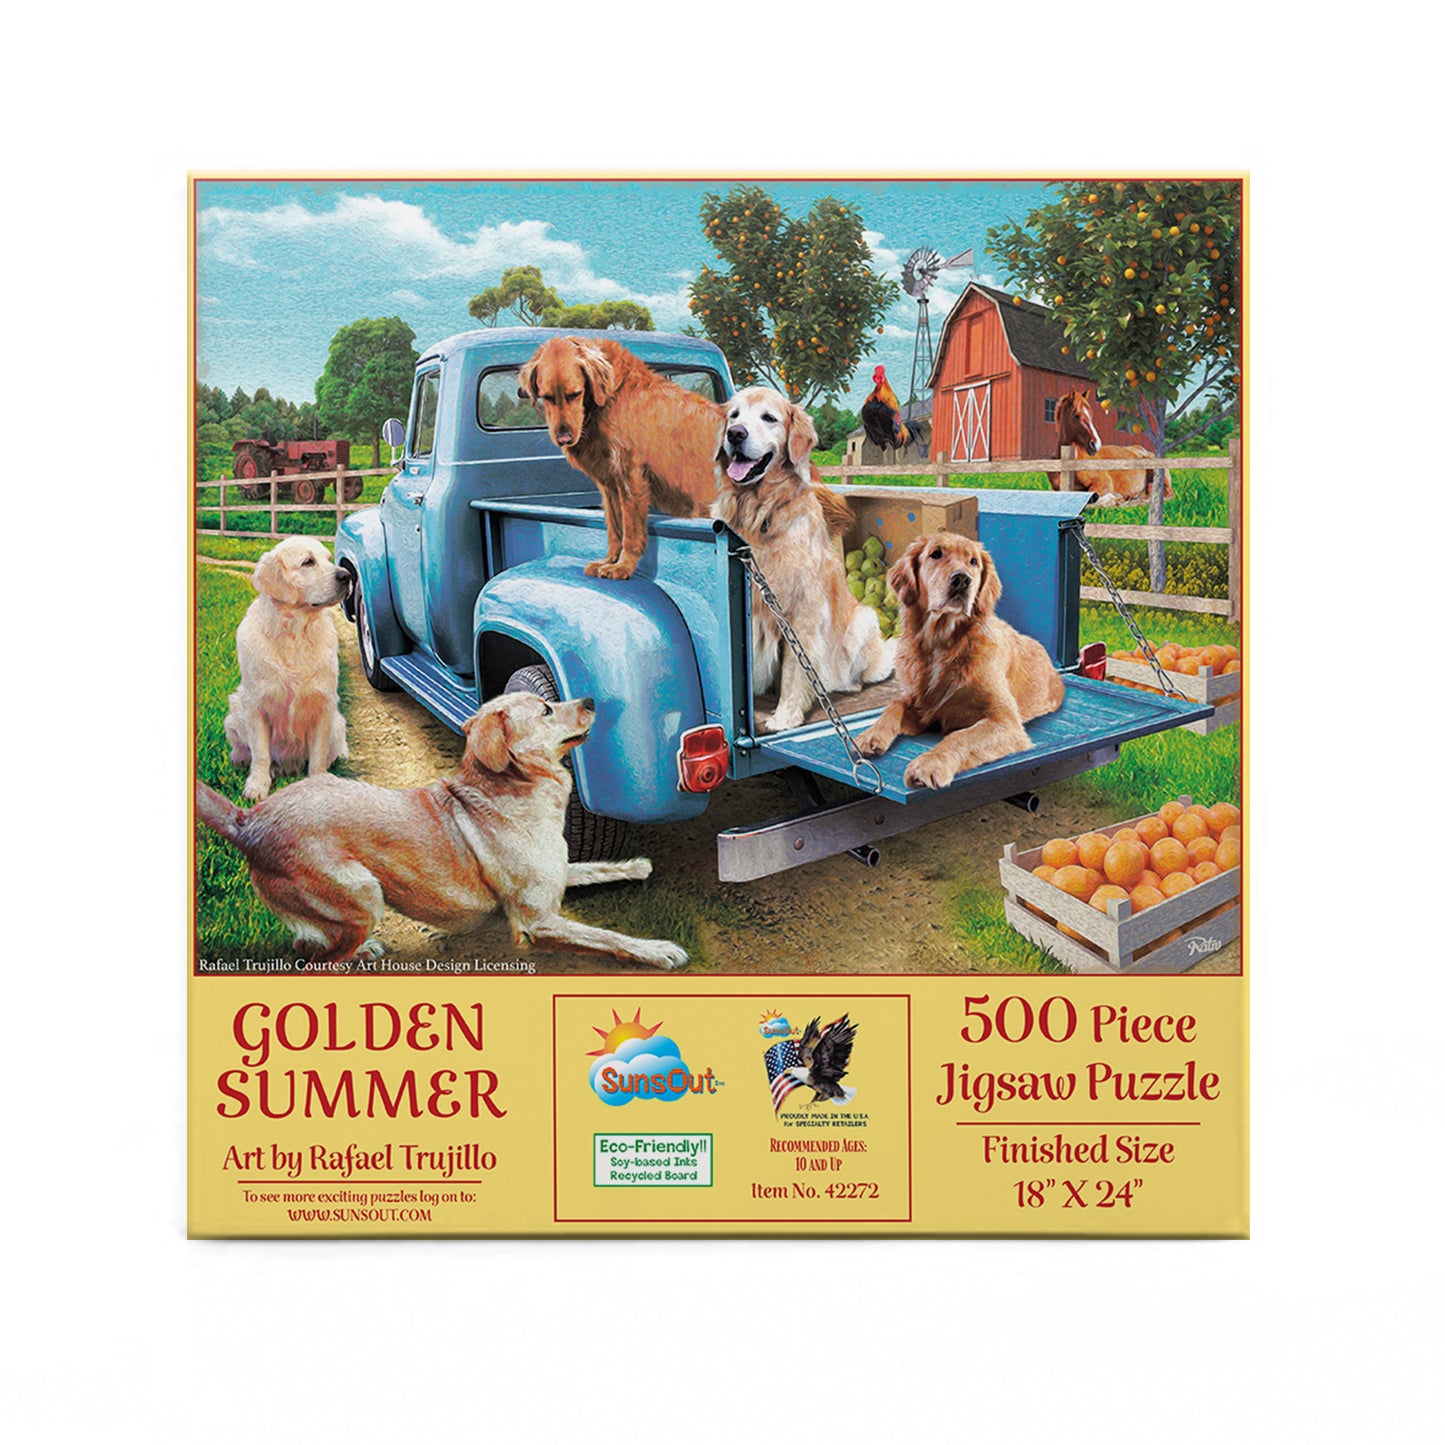 Golden Summer - 500 Piece Jigsaw Puzzle